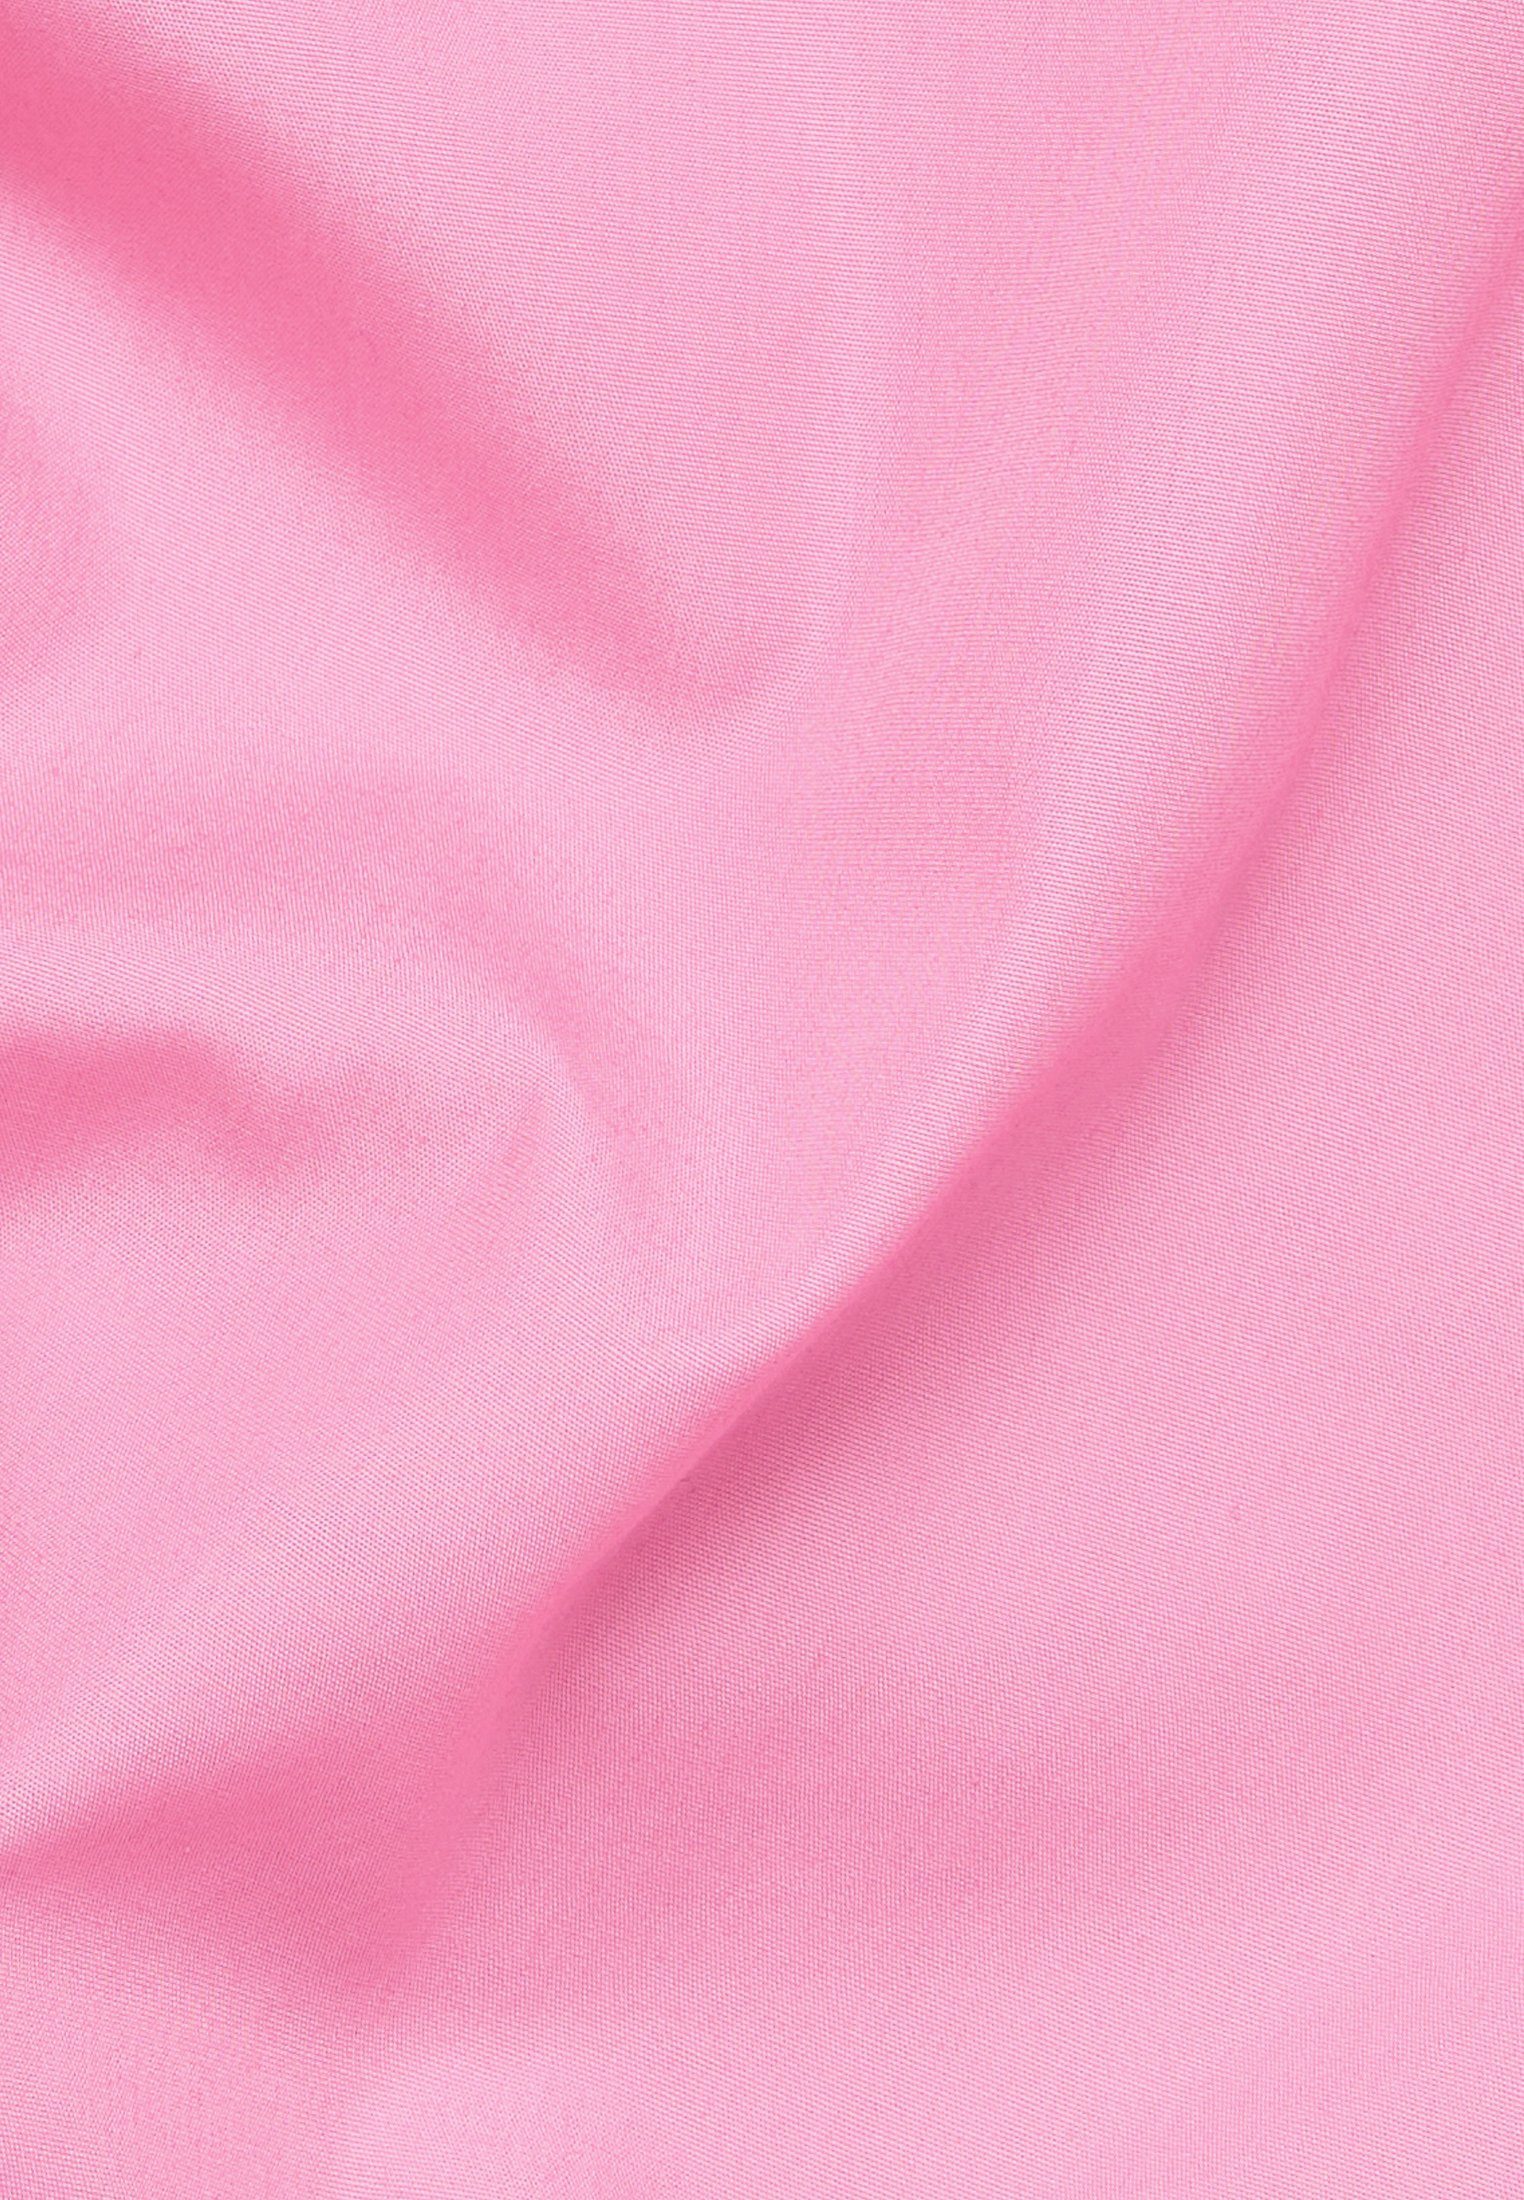 Shirtkleid FIT Eterna pink LOOSE